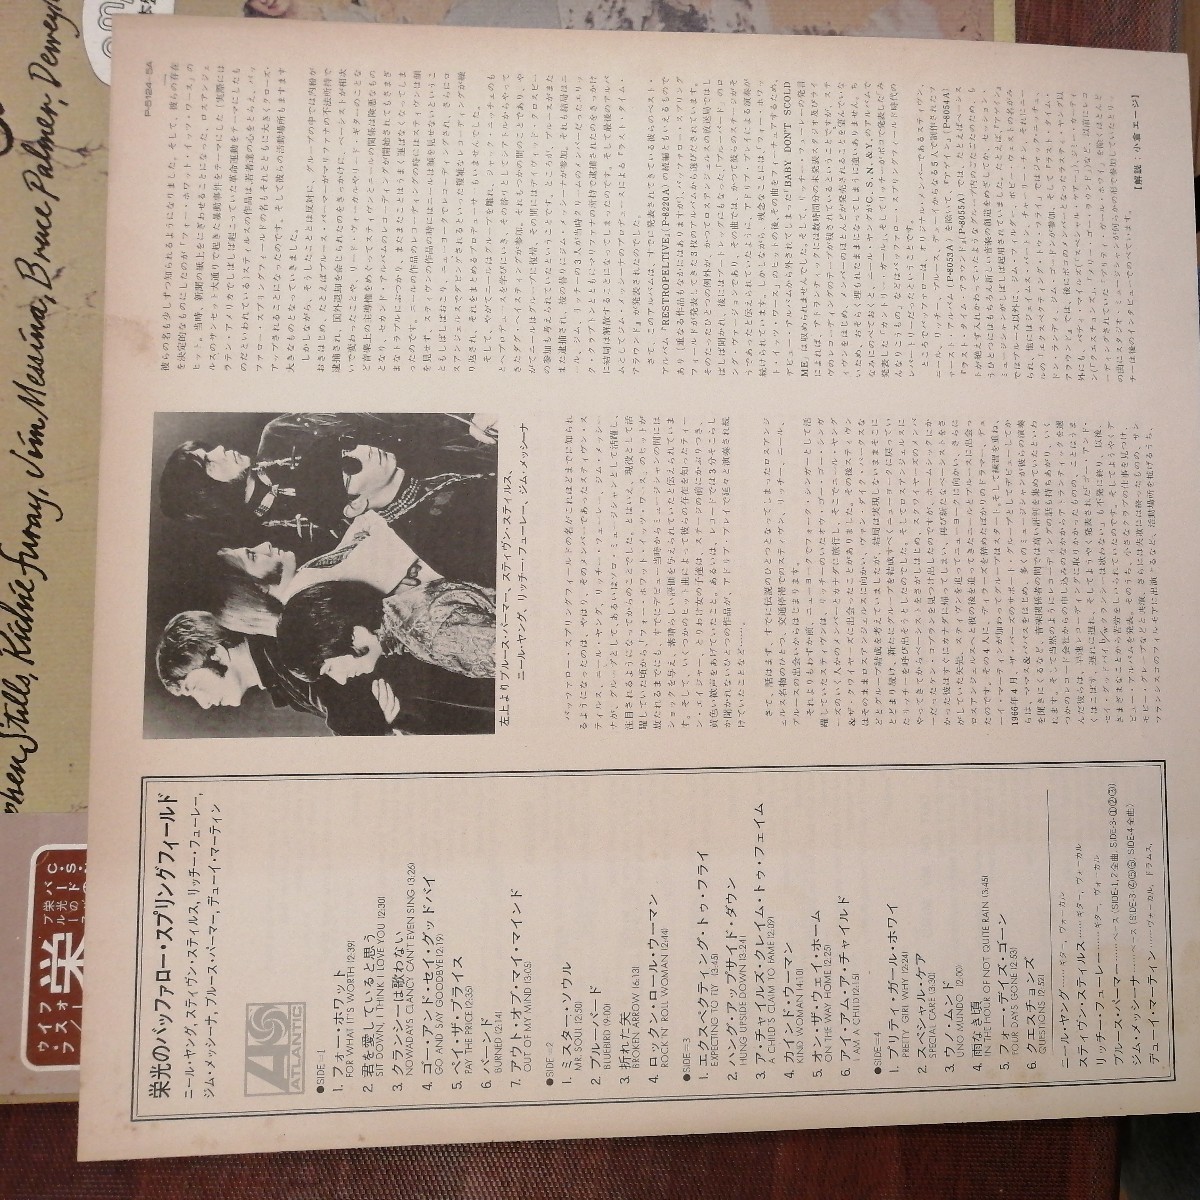 PROMO sample 見本盤バッファロー・スプリングフィールド・アゲイン buffalo springfield 栄光の レコード LP アナログ vinyl p8054a_画像7